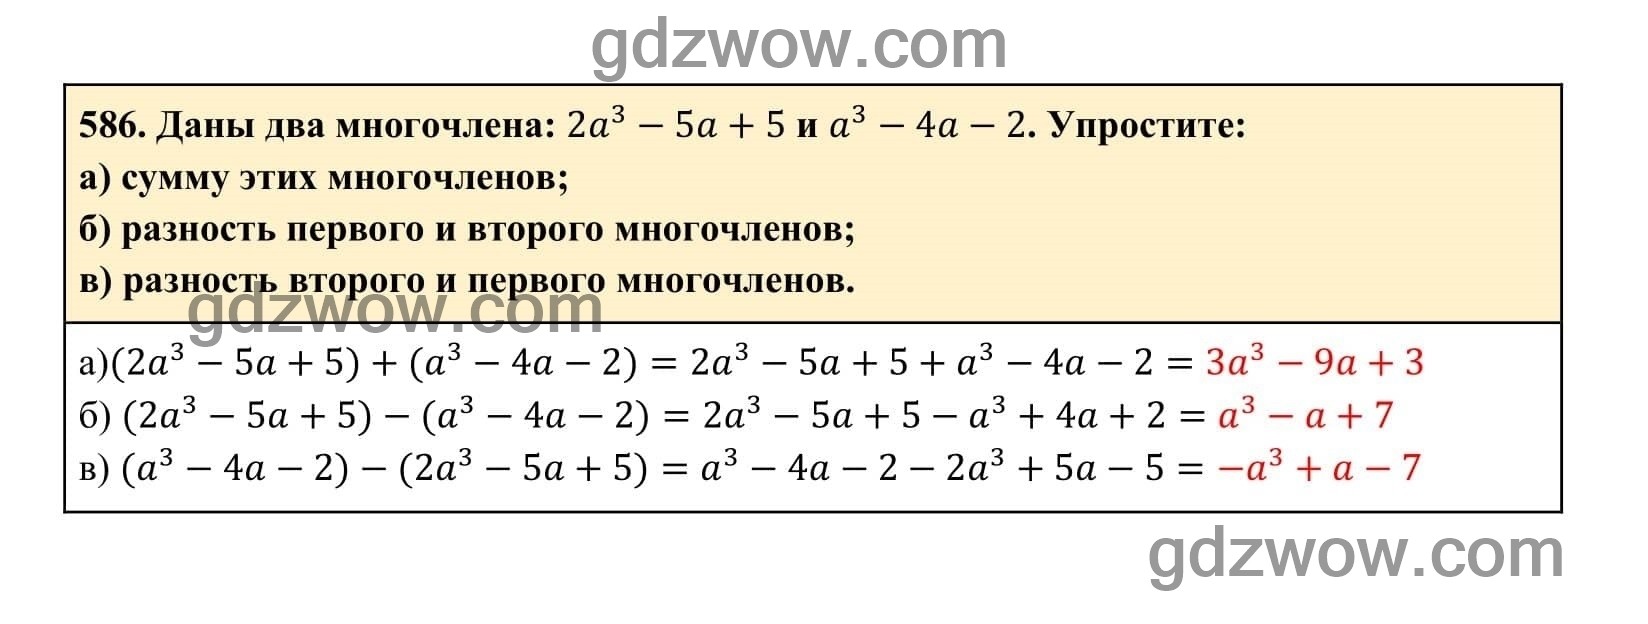 Упражнение 586 - ГДЗ по Алгебре 7 класс Учебник Макарычев (решебник) - GDZwow